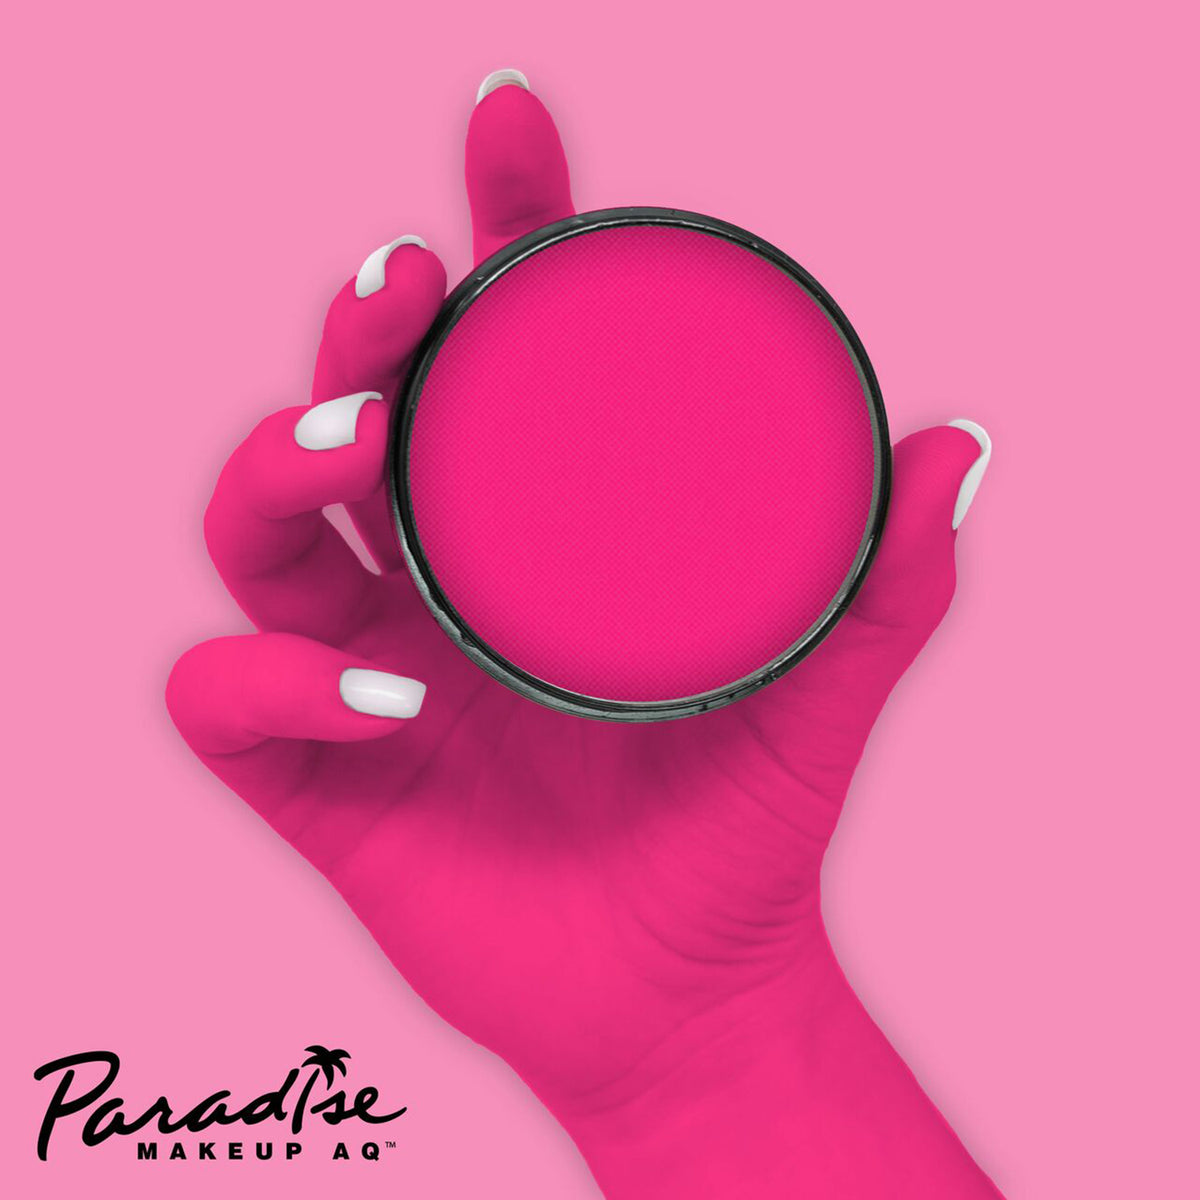 Paradise AQ Face Paint - Intergalactic/Neon Pink (1.4 oz/ 40 gm)